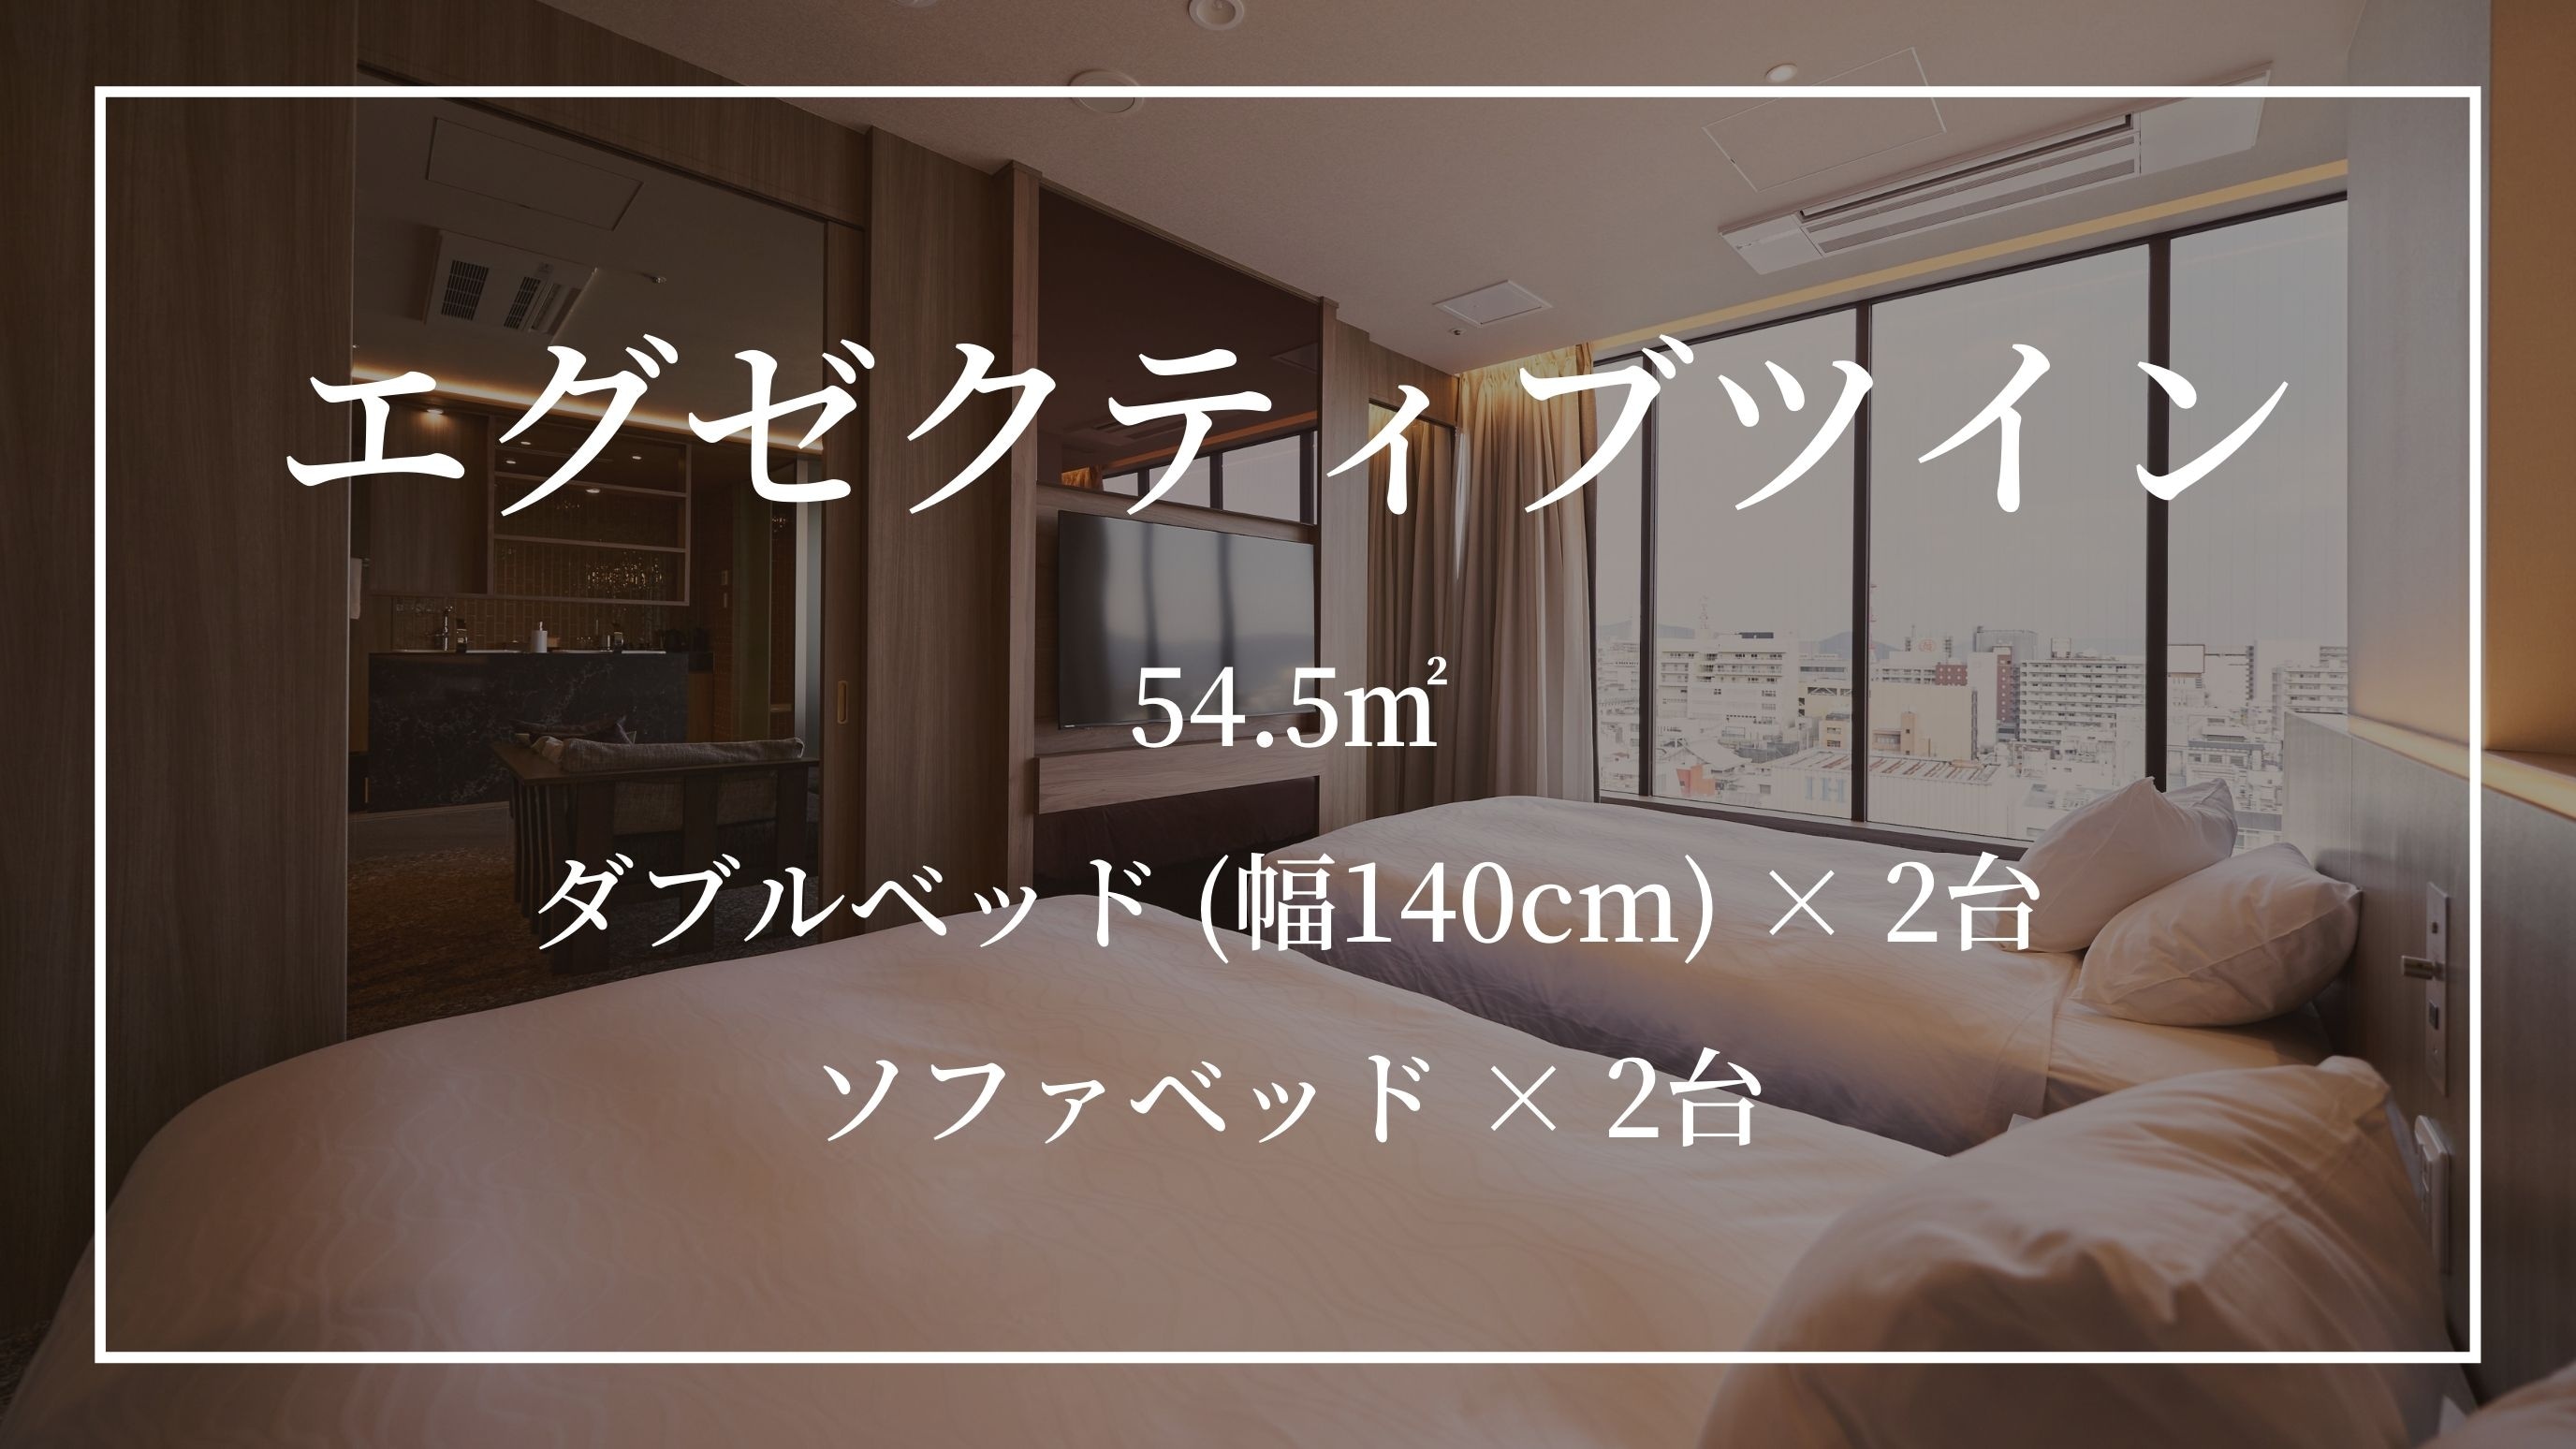 【이그제큐티브 트윈】더블 침대(폭 140cm) × 2대 소파 베드 × 2대